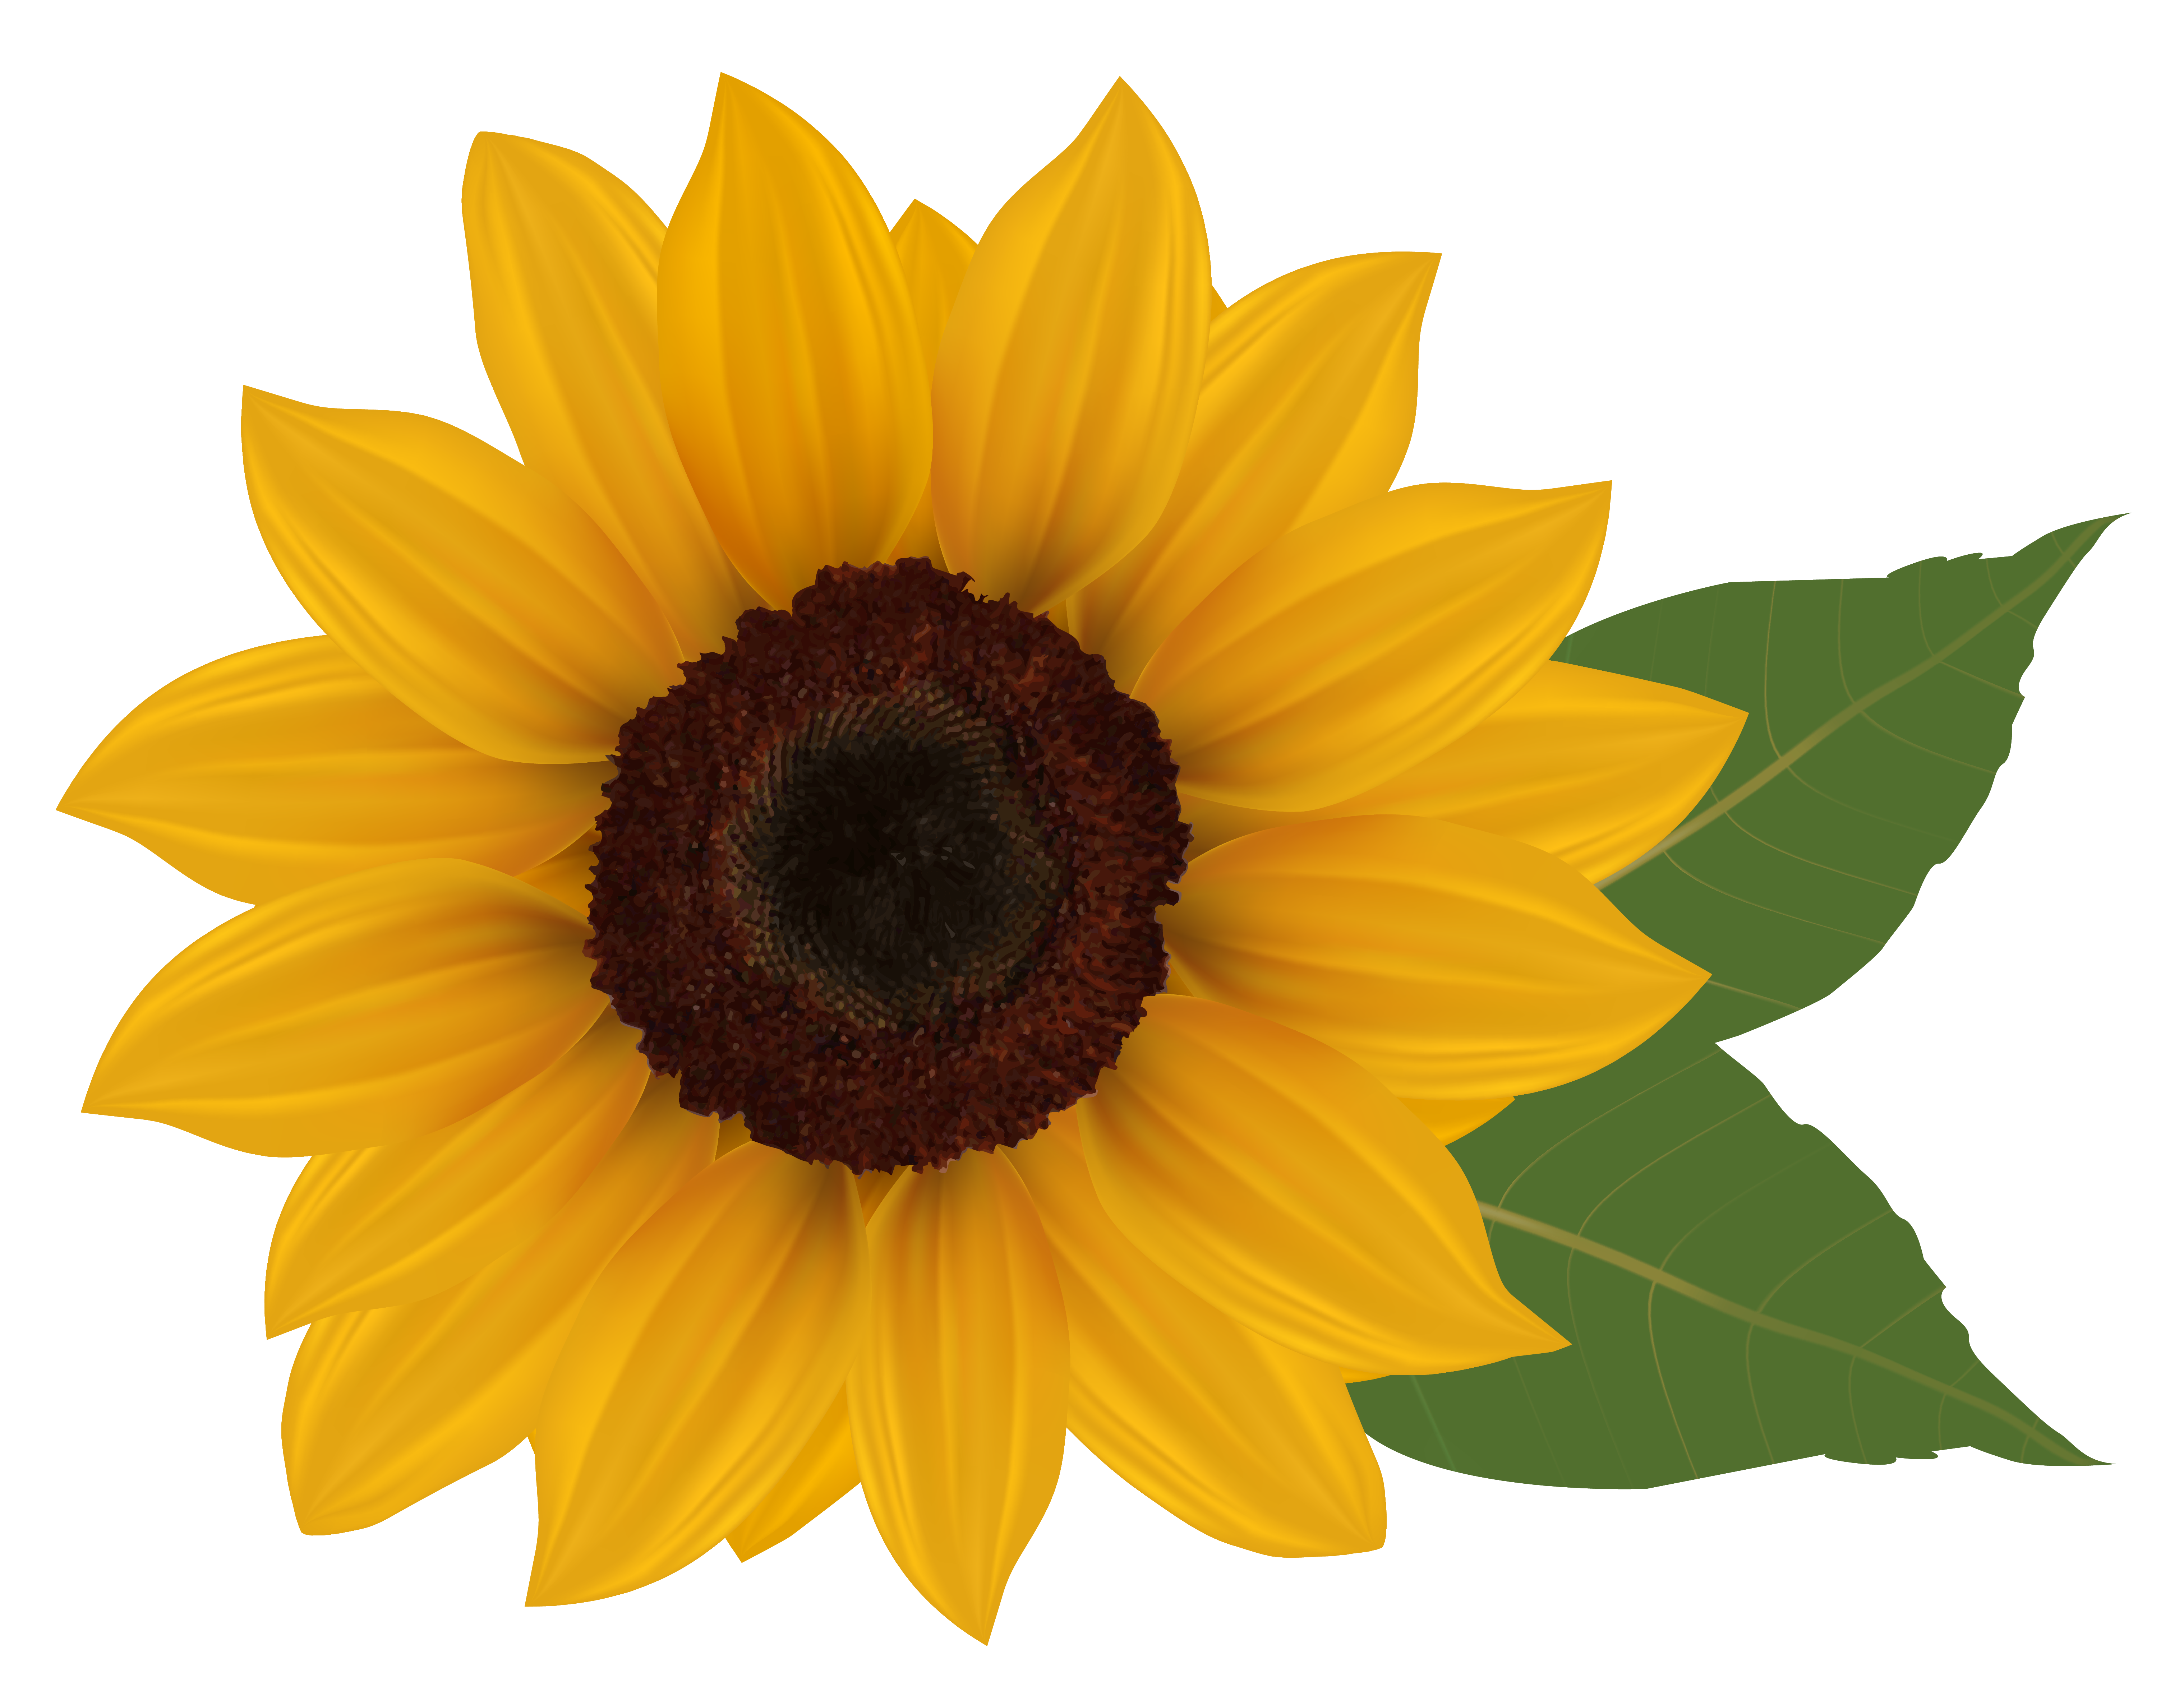 Clip Art Sunflower Clip Art